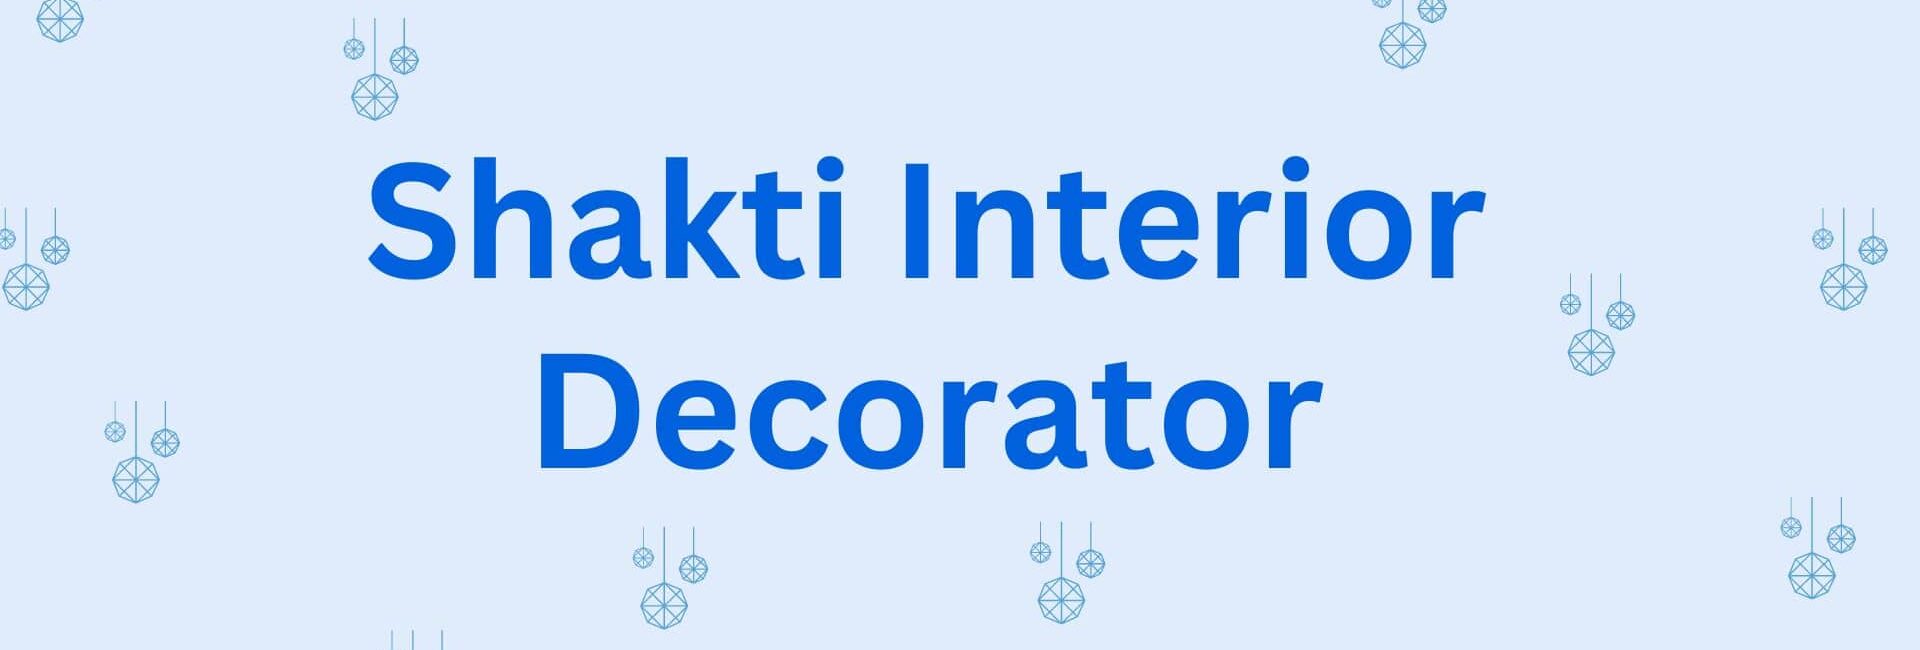 Shakti Interior Decorator - Home Decor Service in Hisar